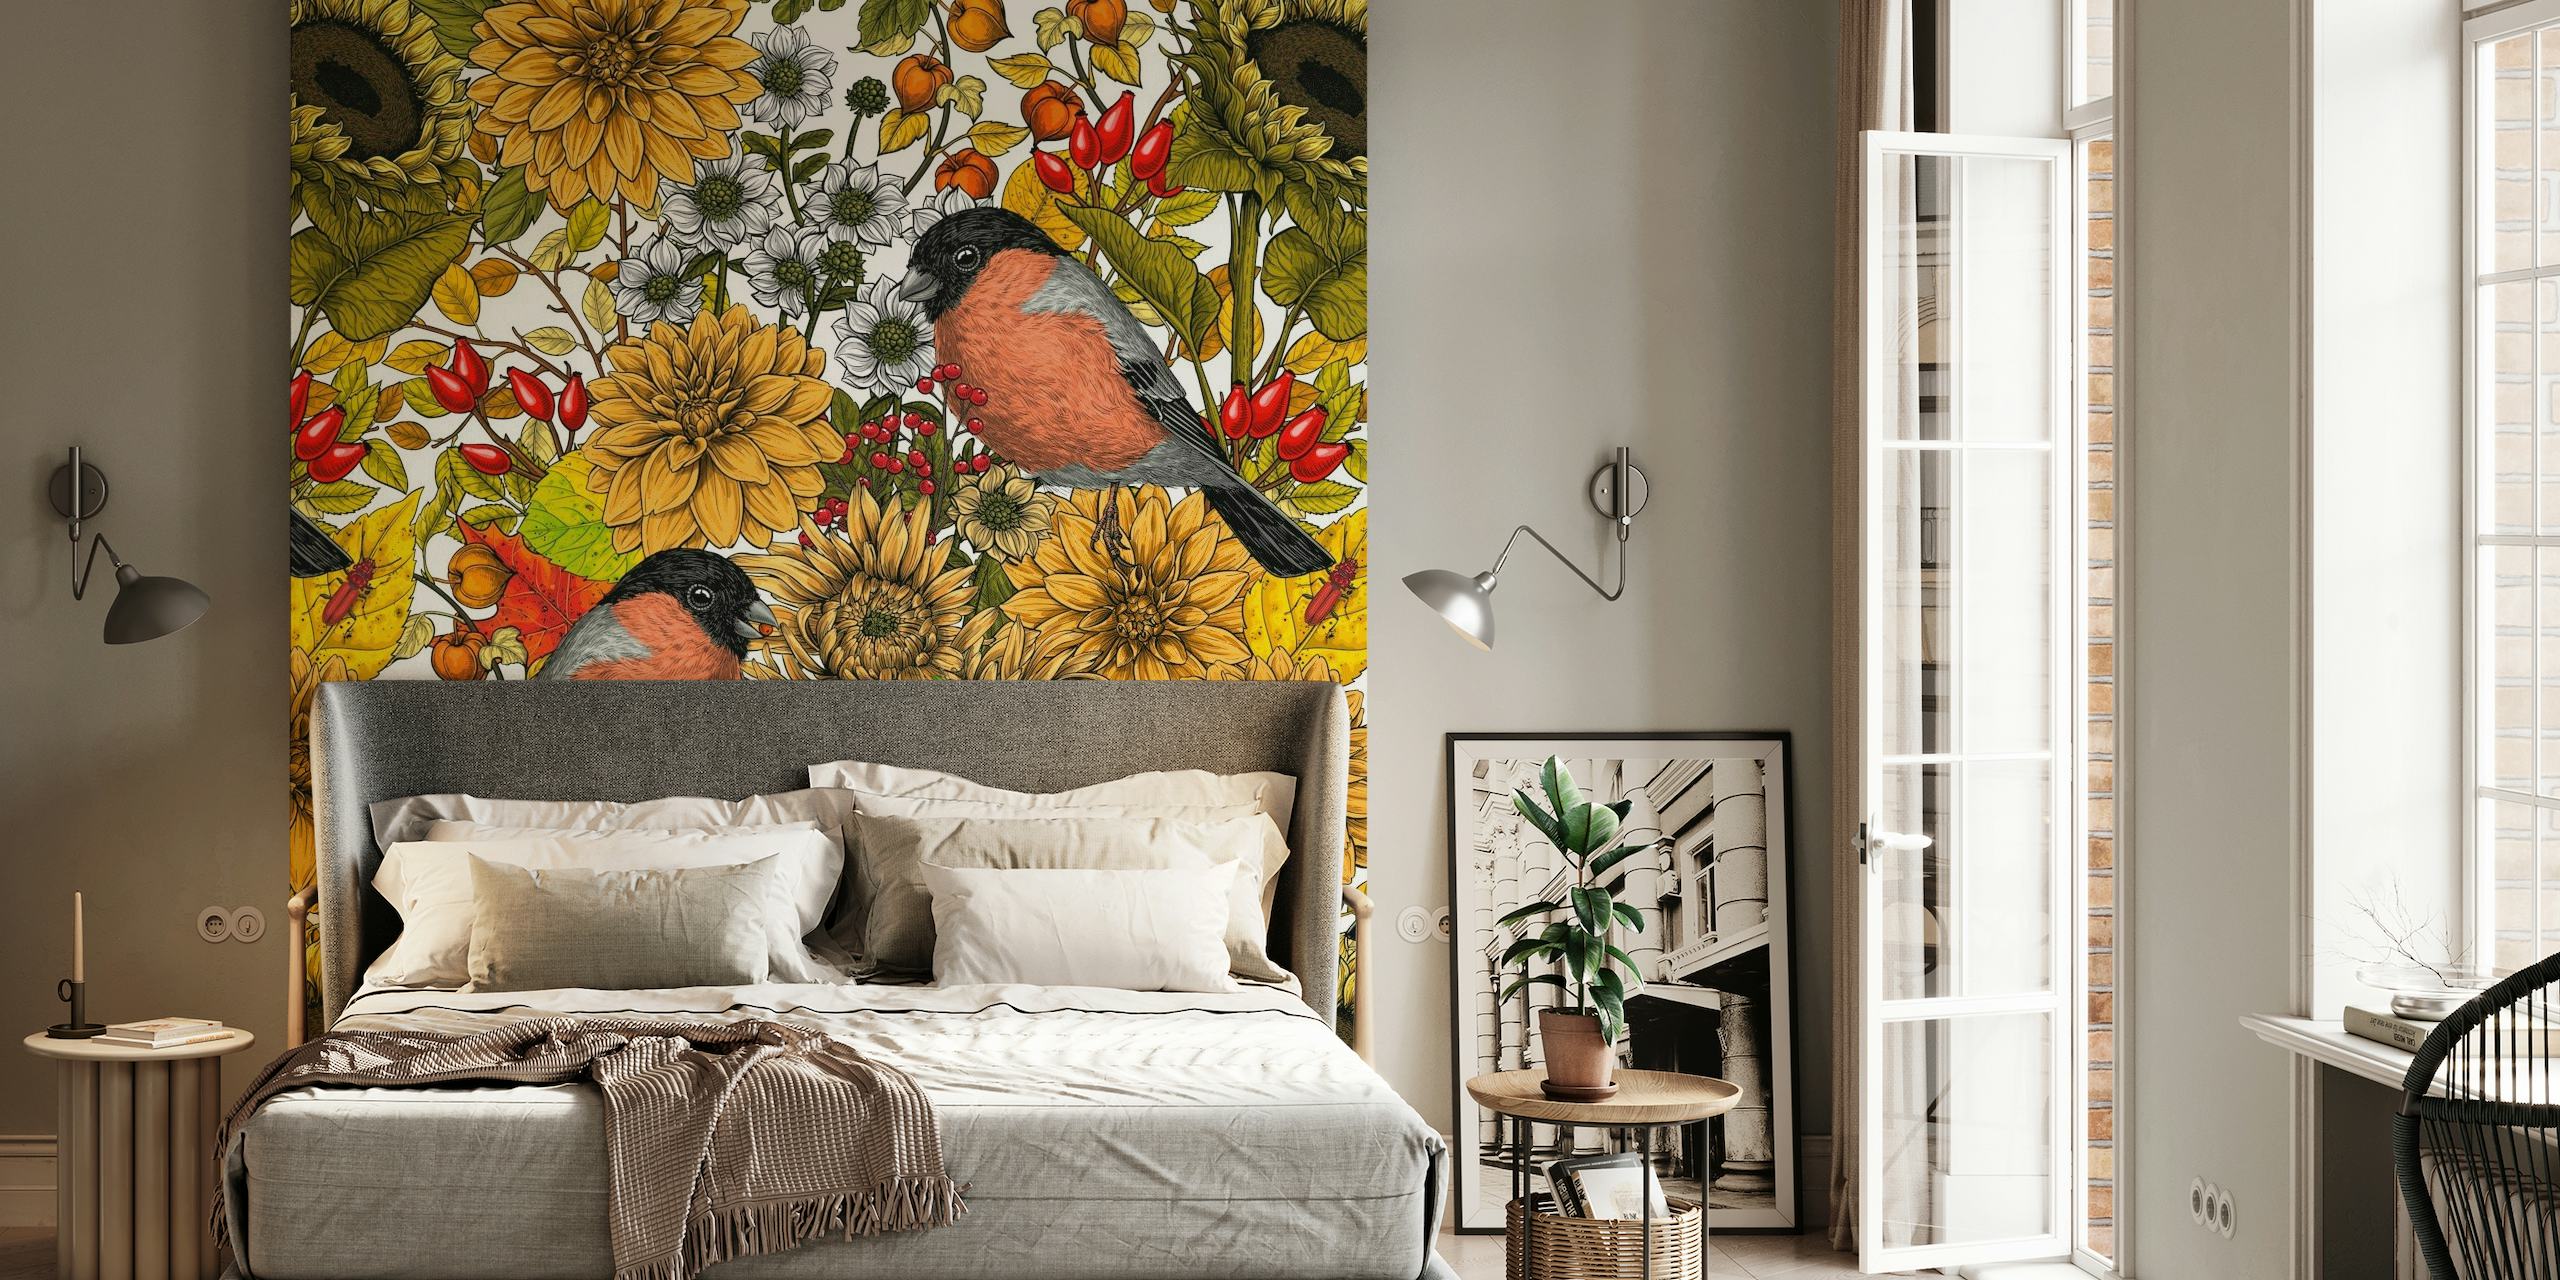 Wandbild mit Herbstgartenmotiven, Sonnenblumen und Vögeln